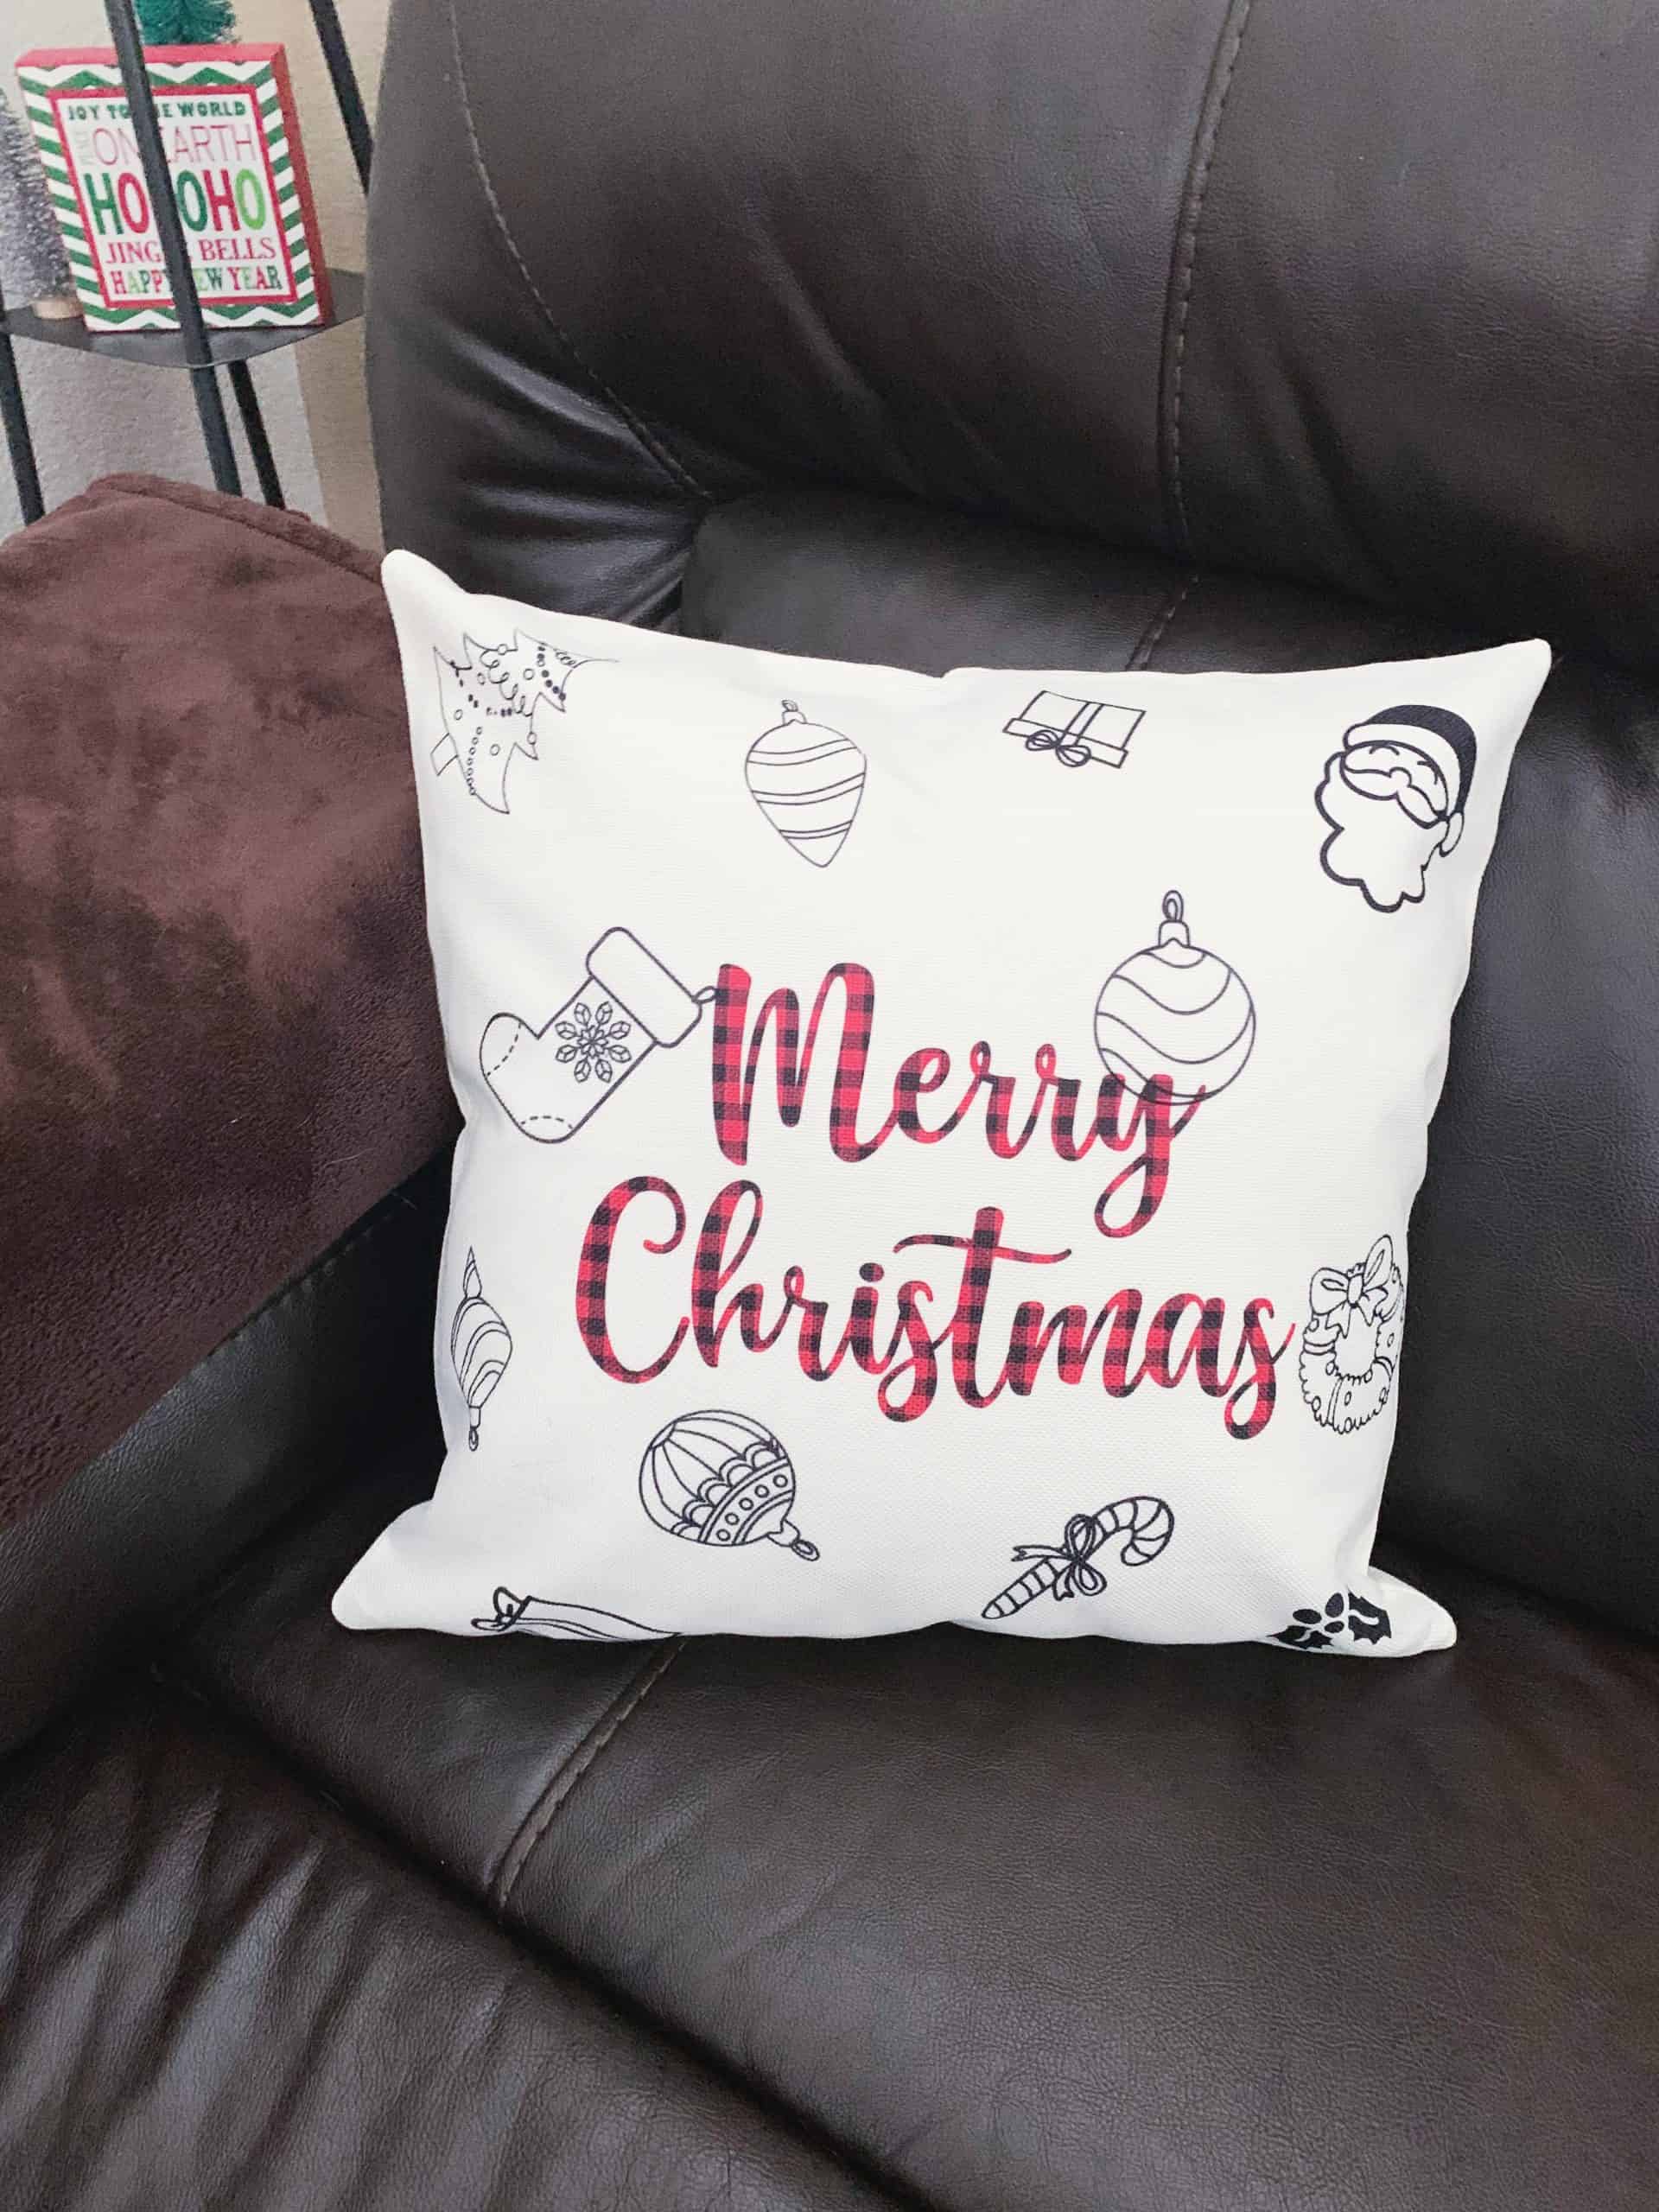 Cricut Christmas pillow cover